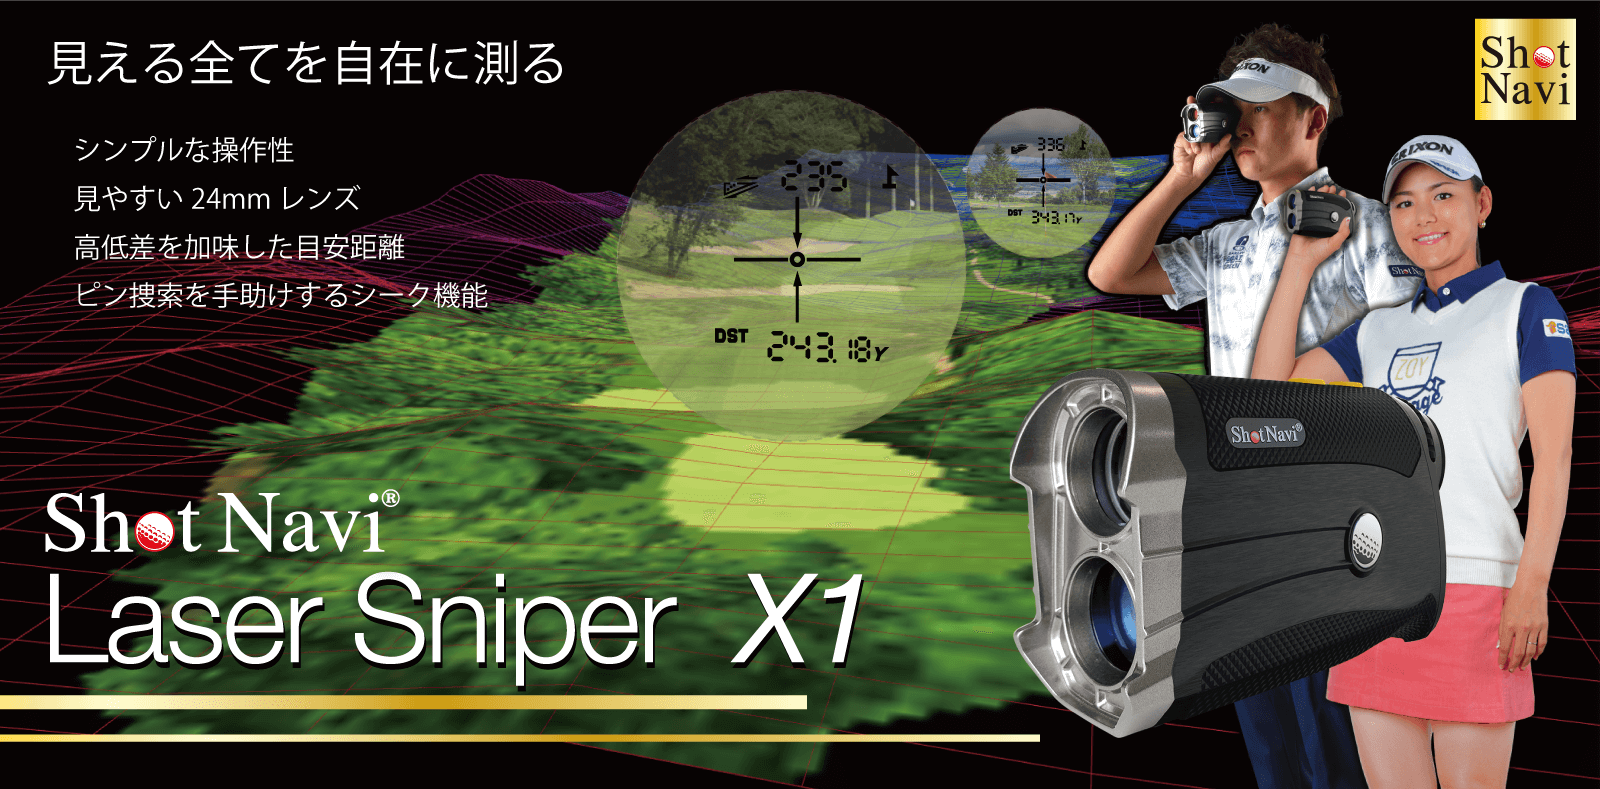 ショットナビ / Laser Sniper X1